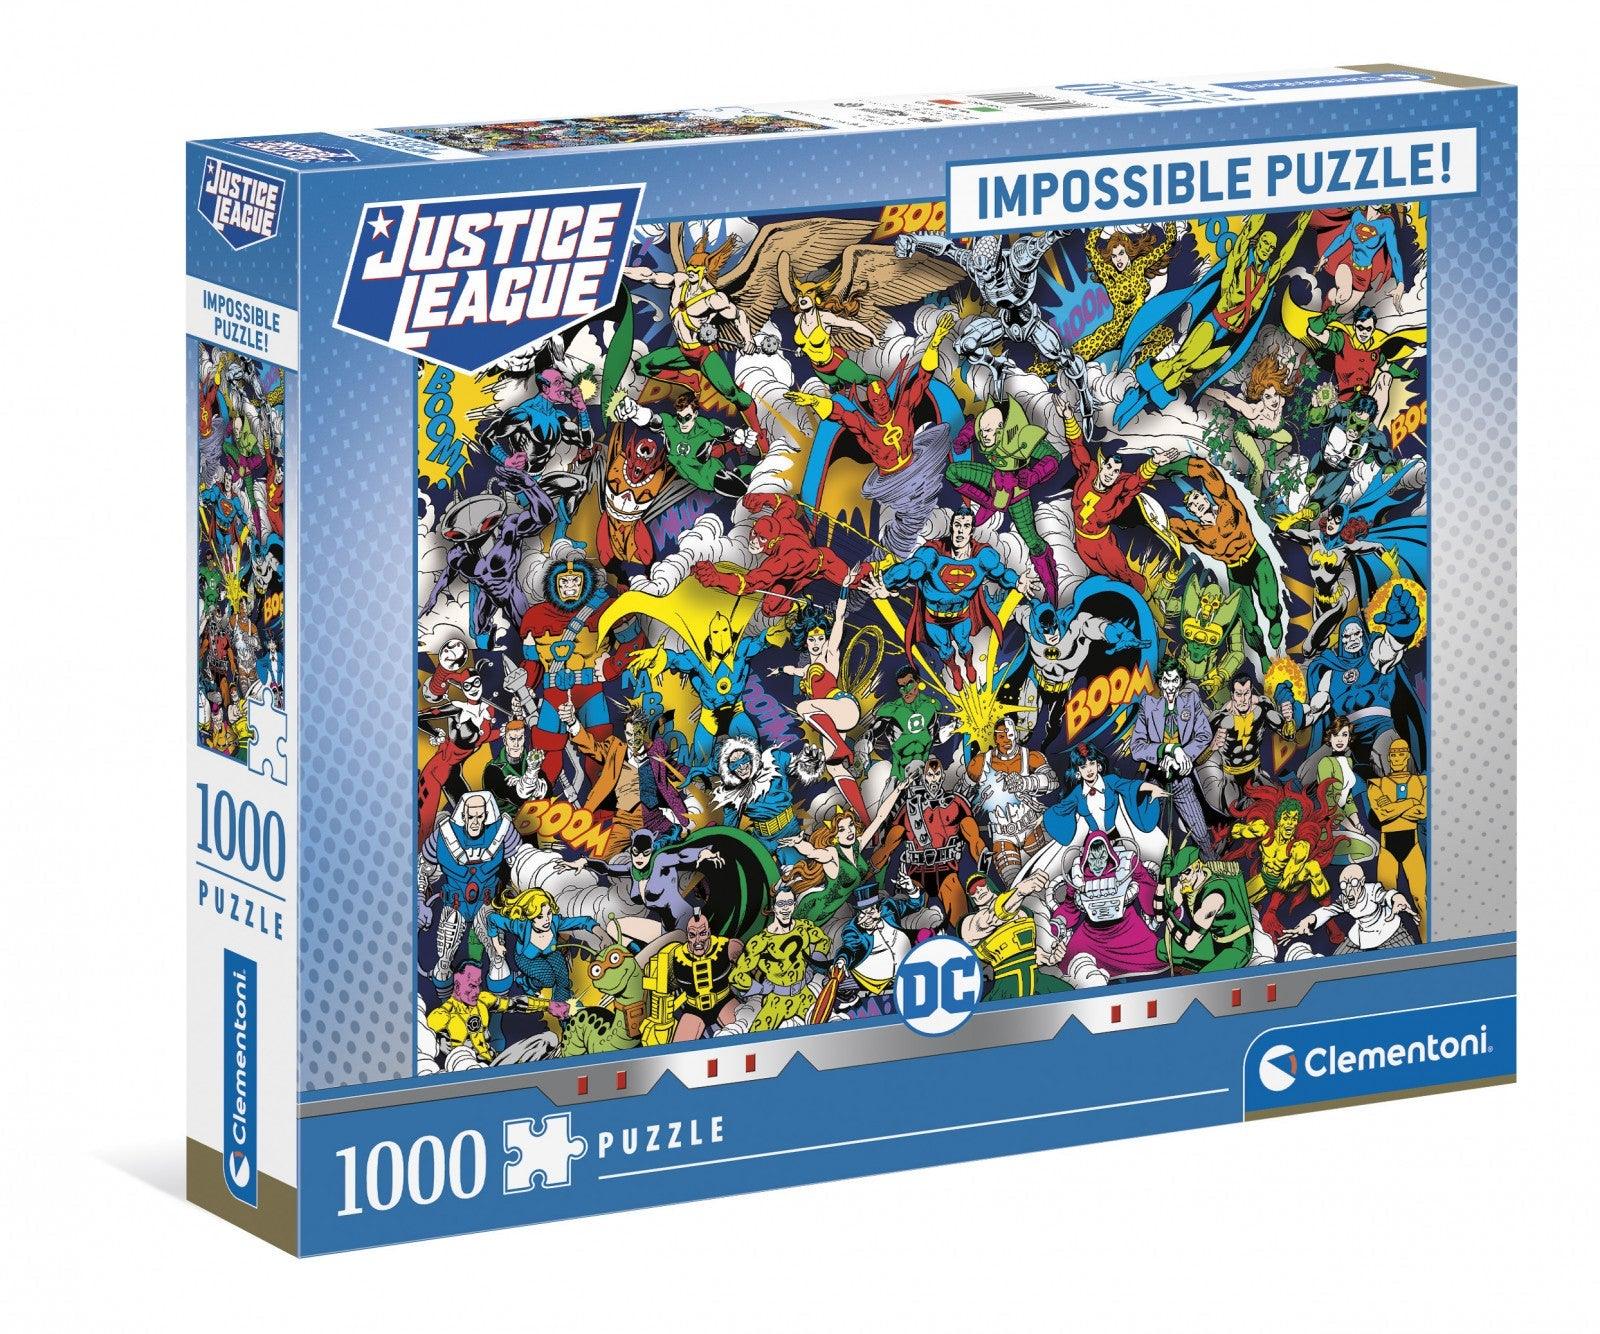 VR-87887 Clementoni Puzzle DC Comics Impossible Puzzle 1,000 pieces - Clementoni - Titan Pop Culture